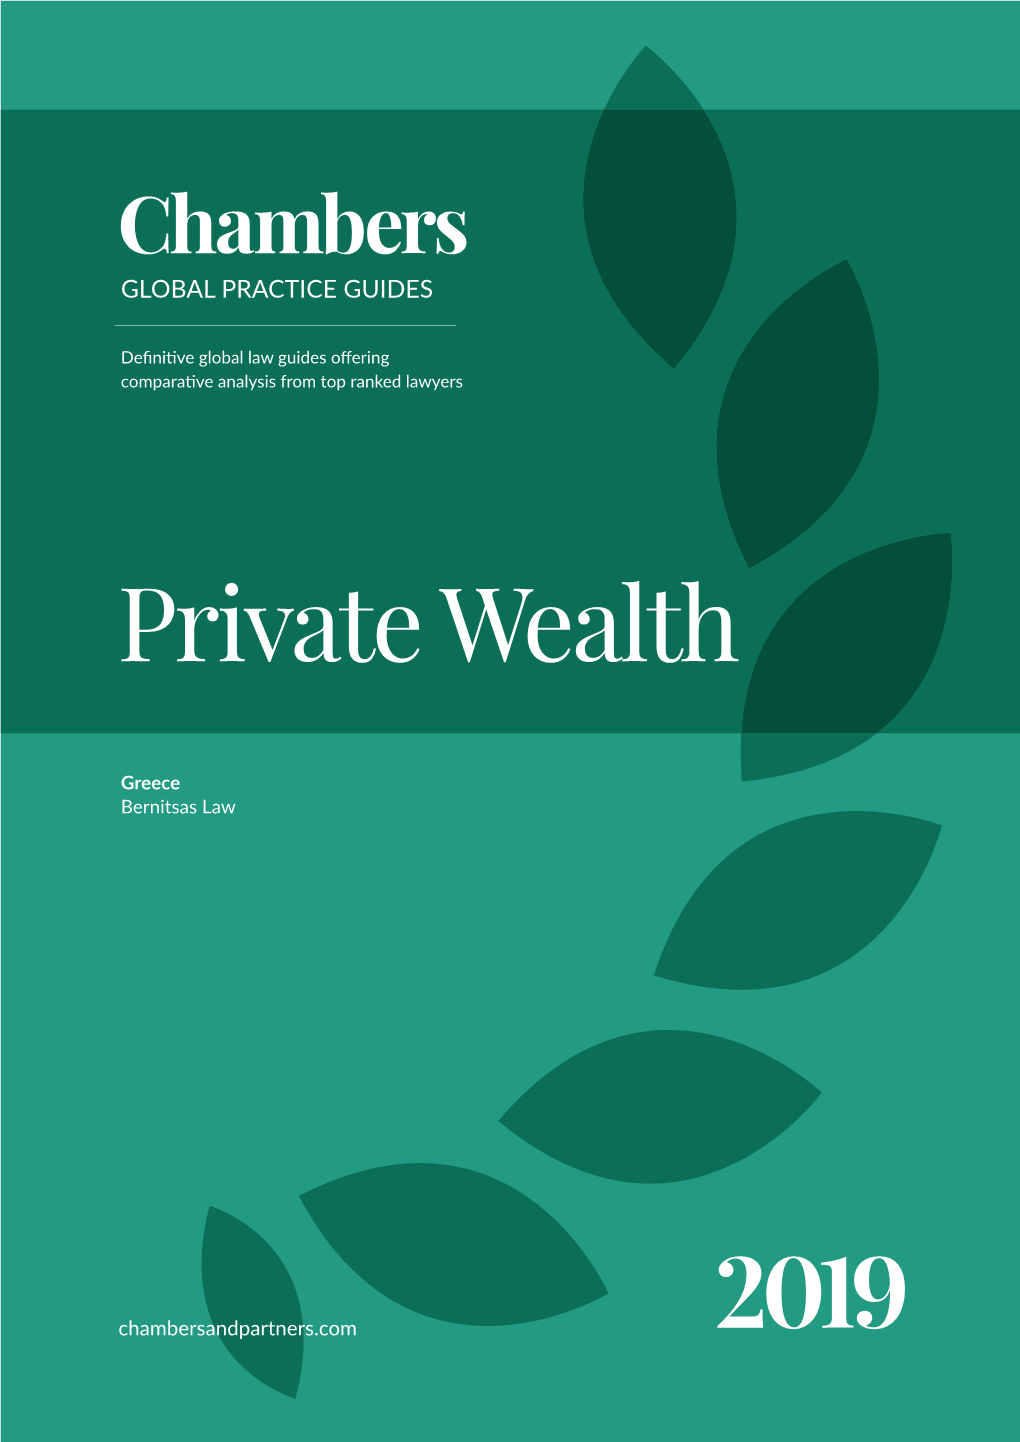 Private Wealth